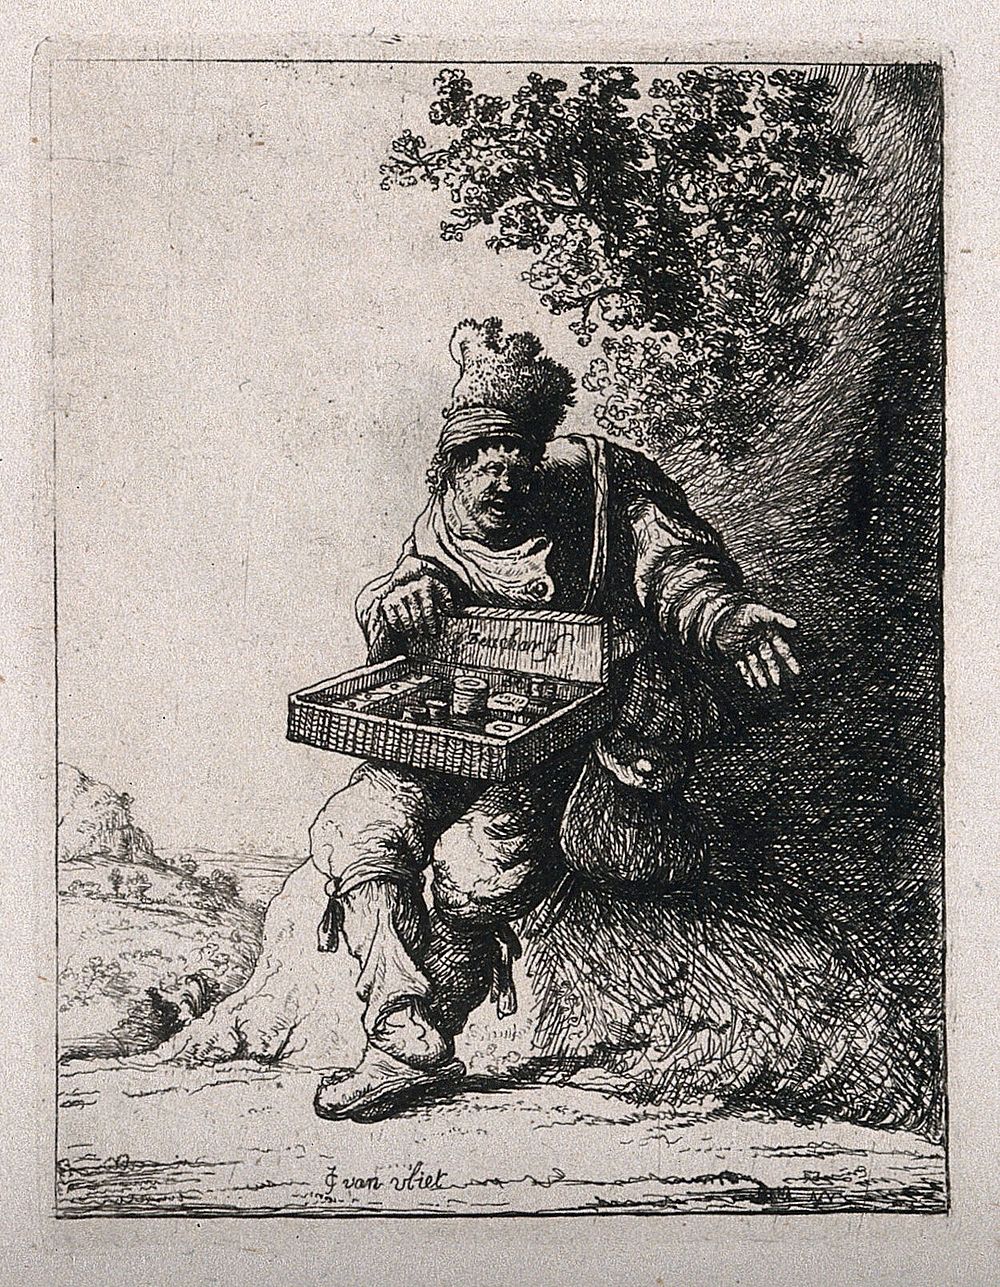 A travelling drug seller. Etching by D. Deuchar after J. van der Vliet.